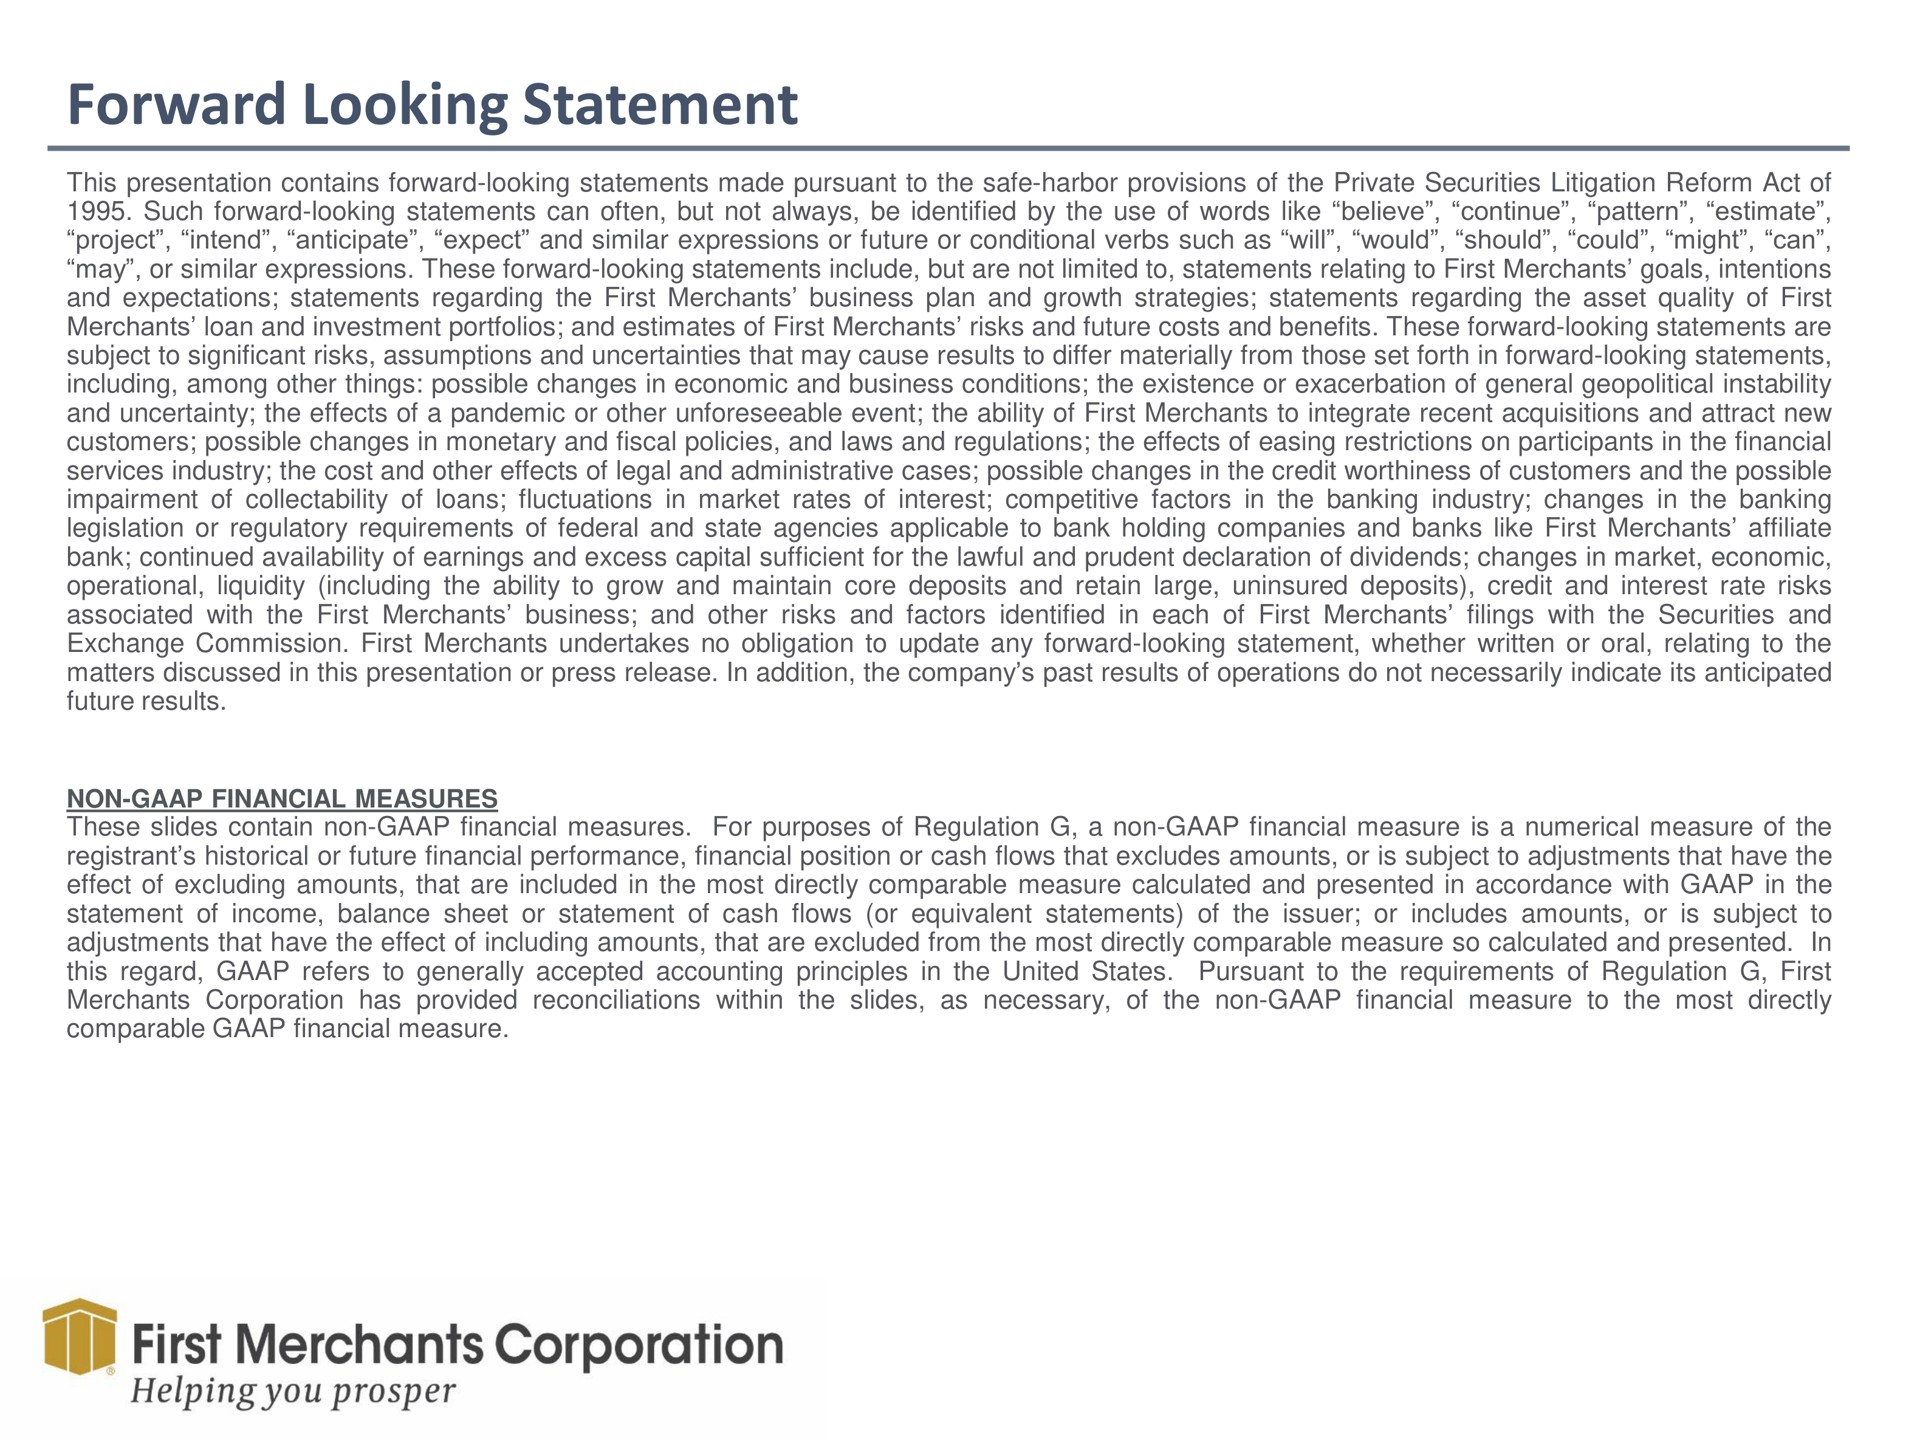 forward looking statement first merchants corporation | First Merchants